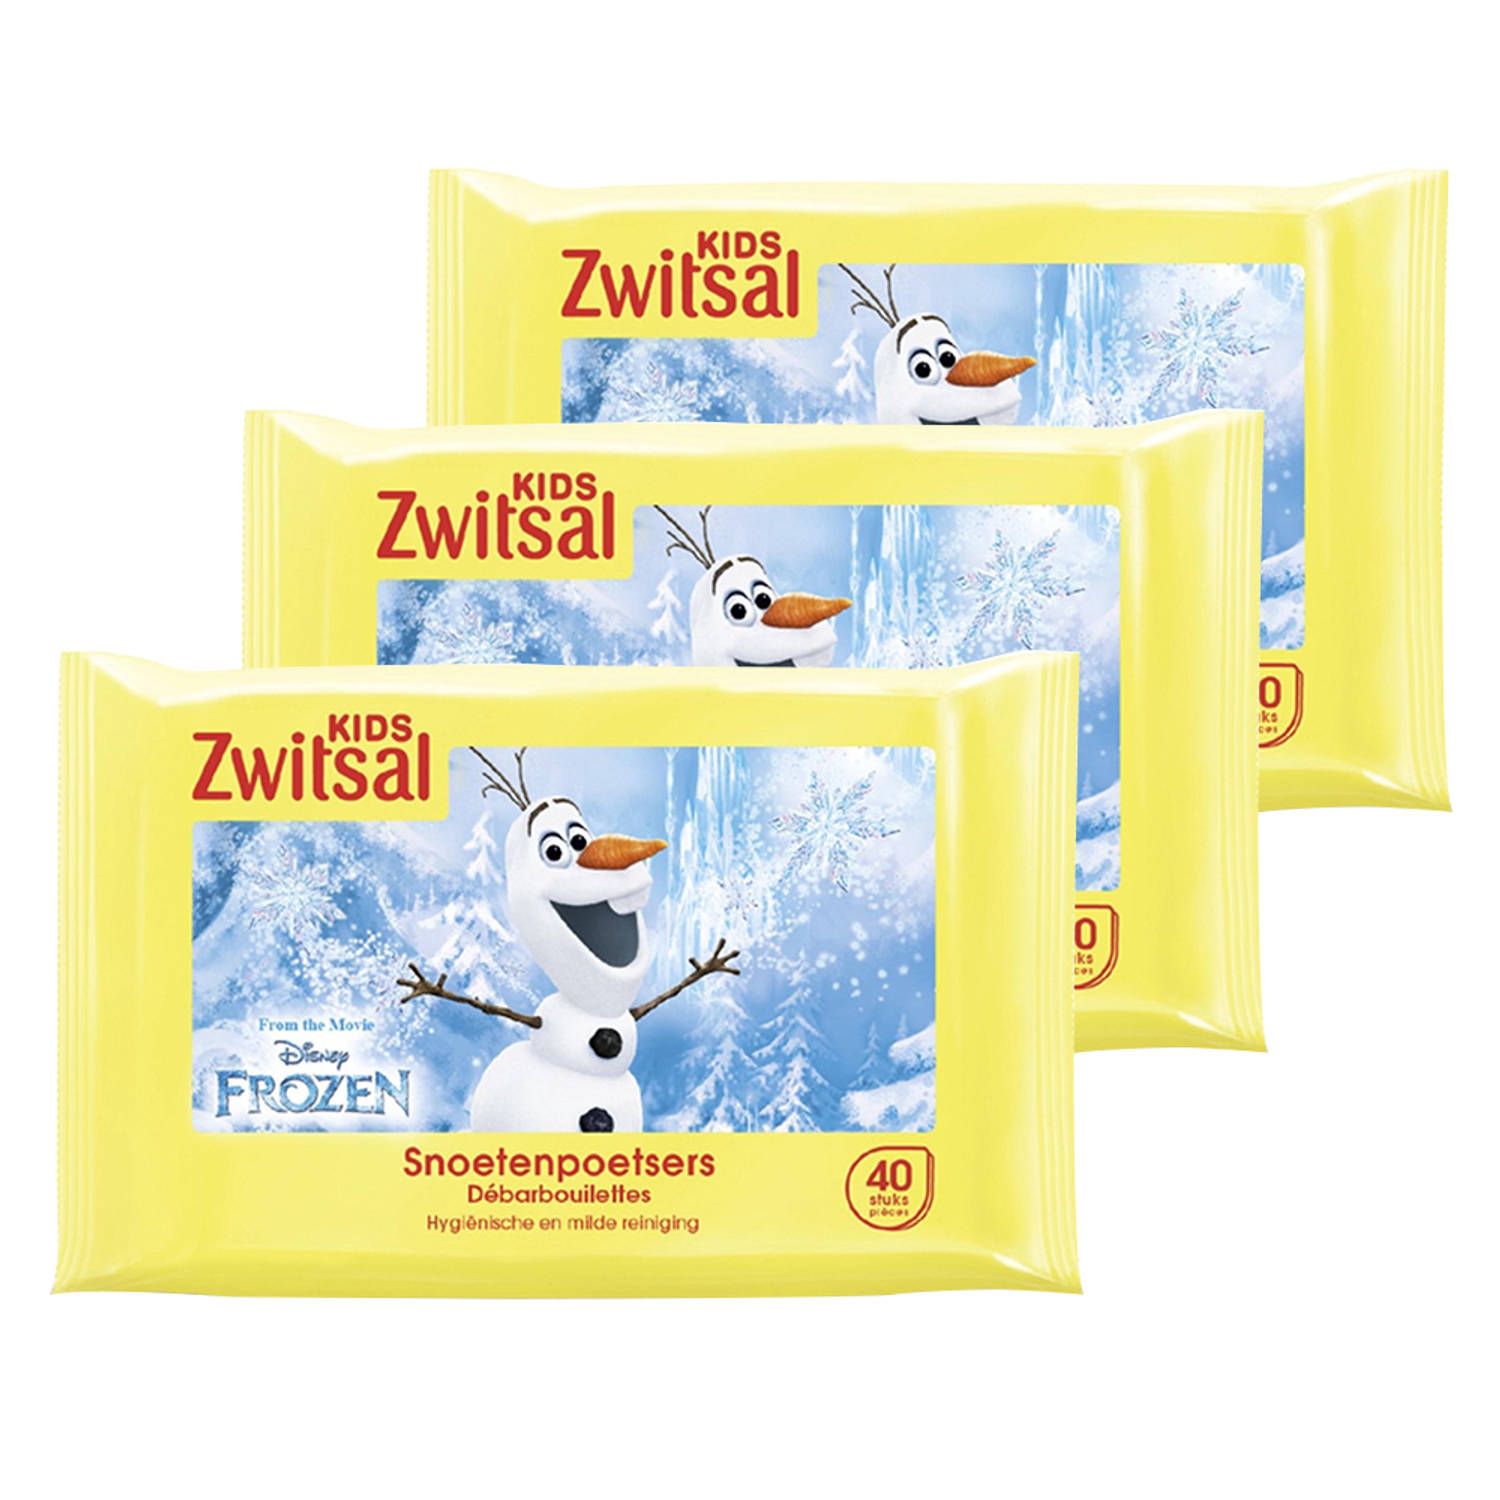 Zwitsal - Kids Frozen Snoetenpoetsers - 3 x 40 Monddoekjes - Voordeelpack